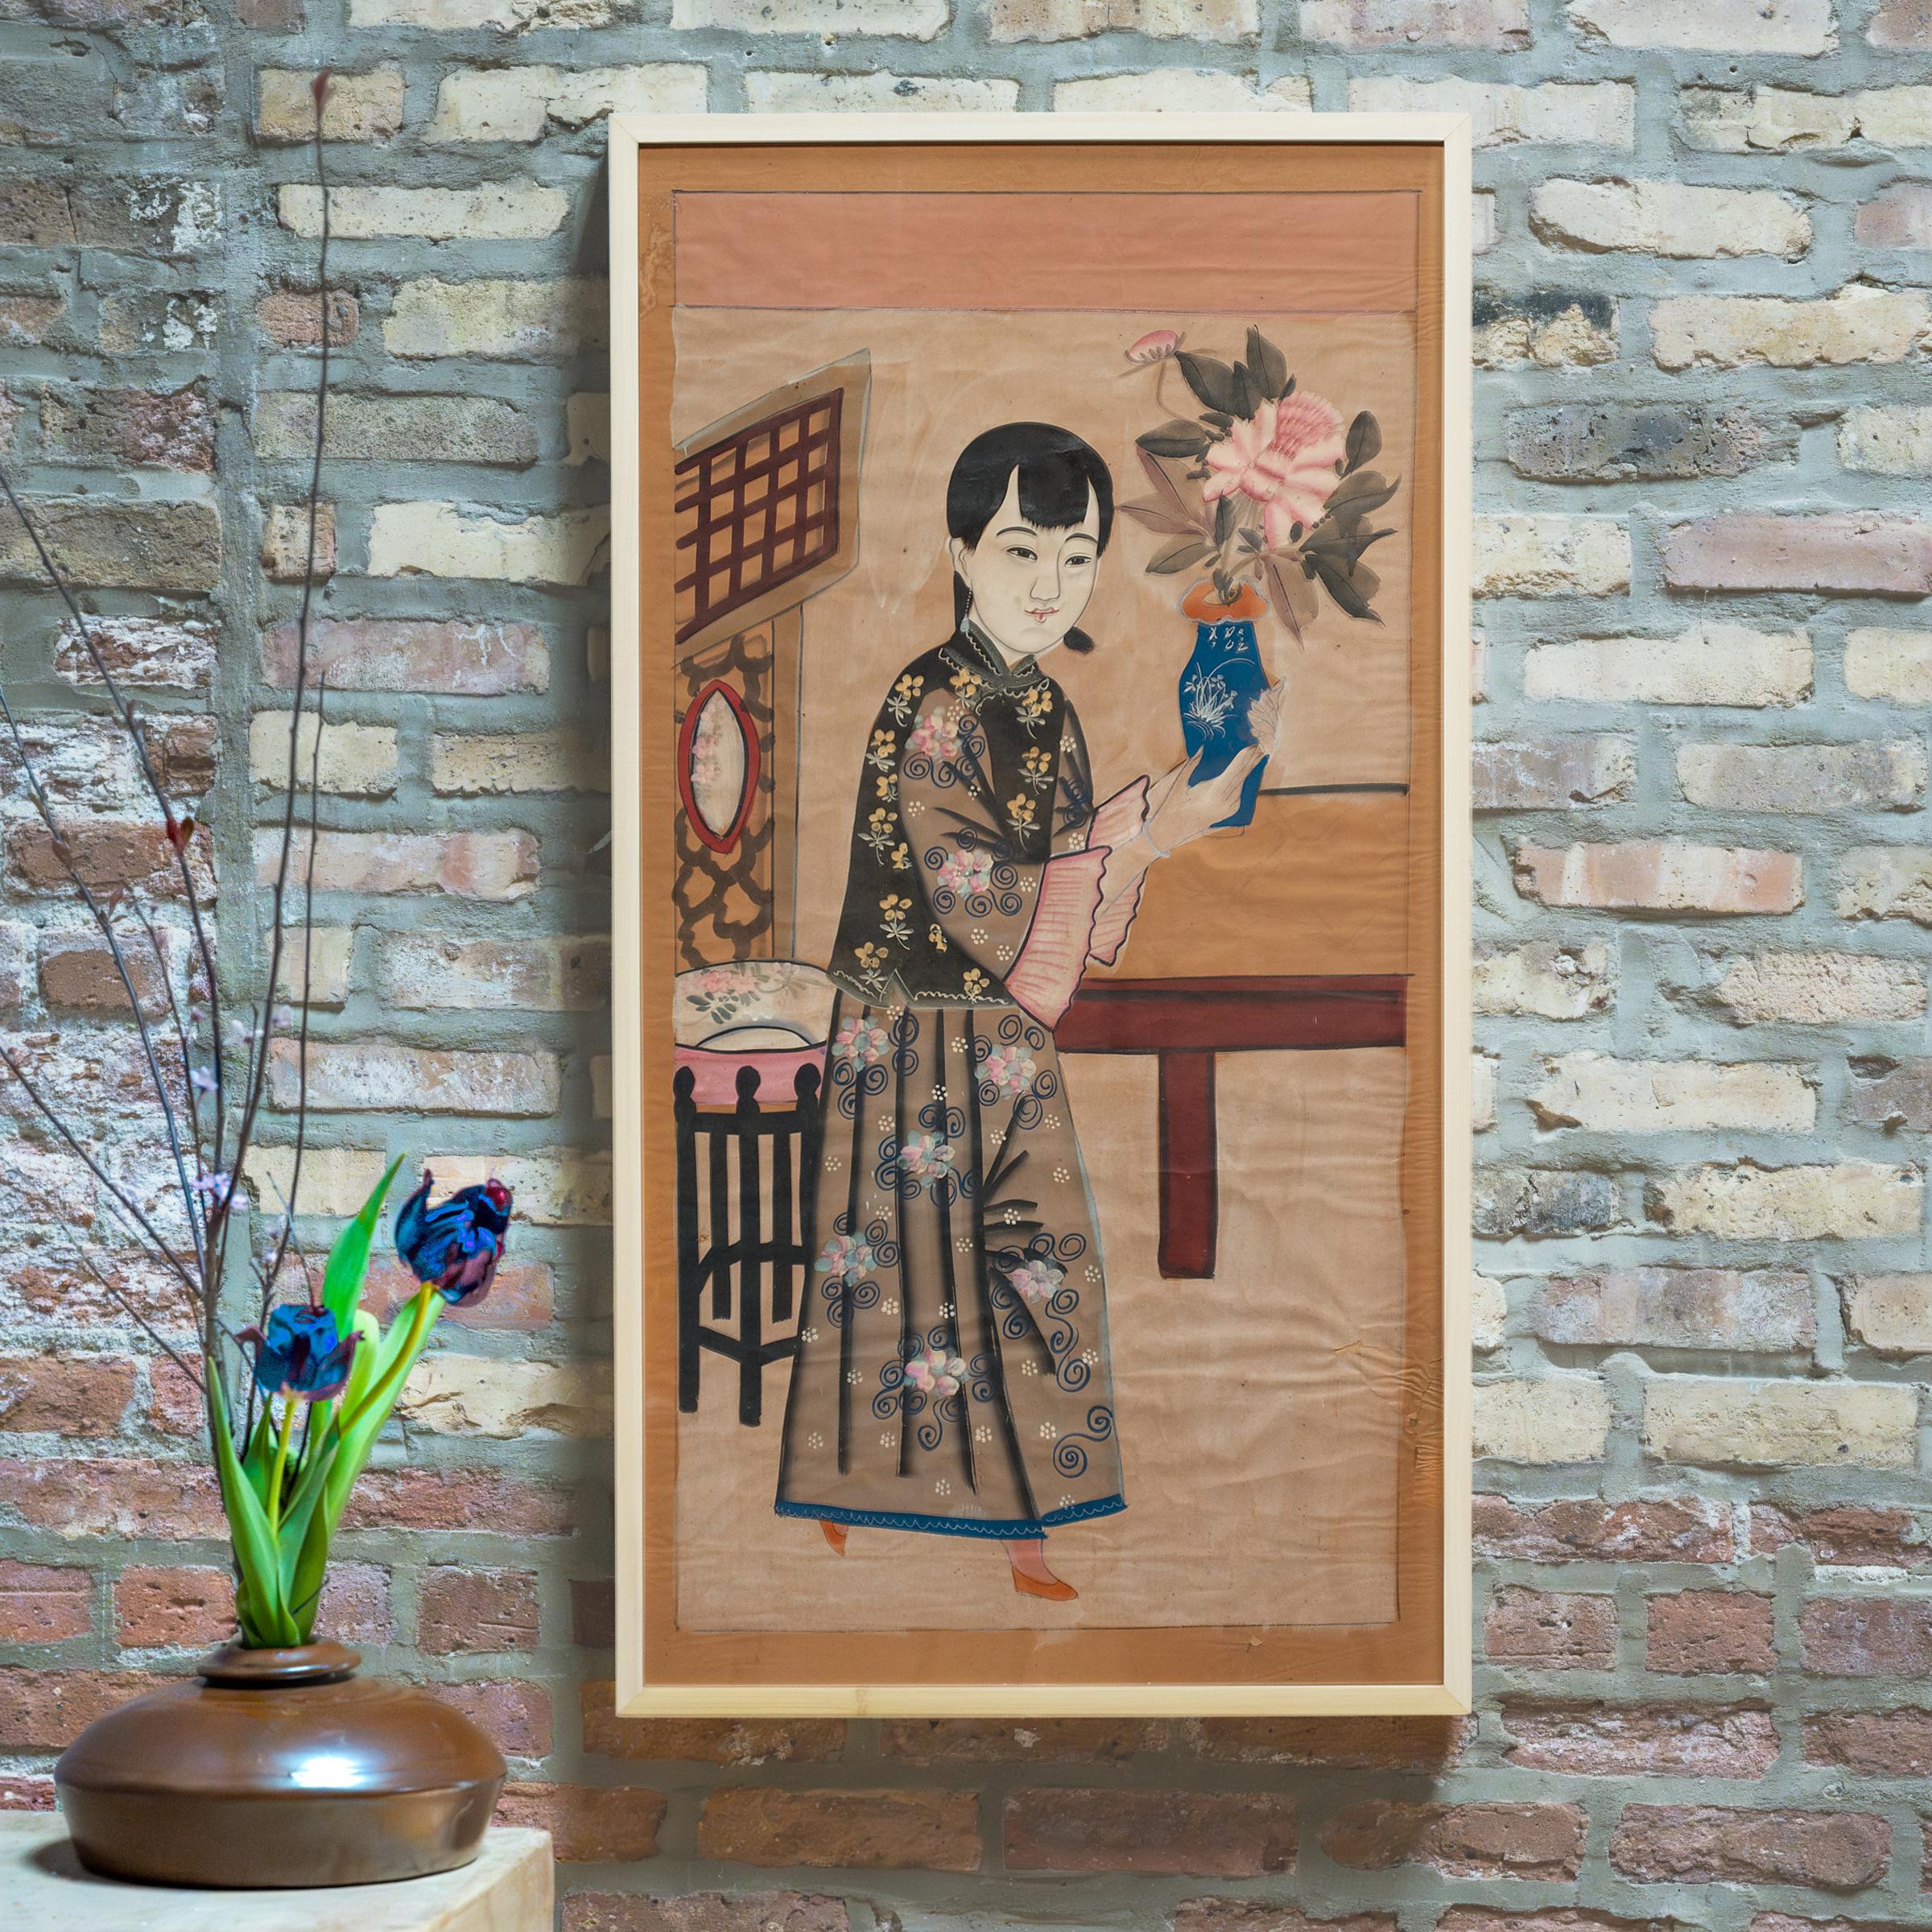 Les peintures du Nouvel An chinois (nian hua) sont des peintures folkloriques colorées créées pour célébrer la fête annuelle du printemps. Dessinées ou imprimées par des artistes populaires dans des studios régionaux, les peintures nian hua